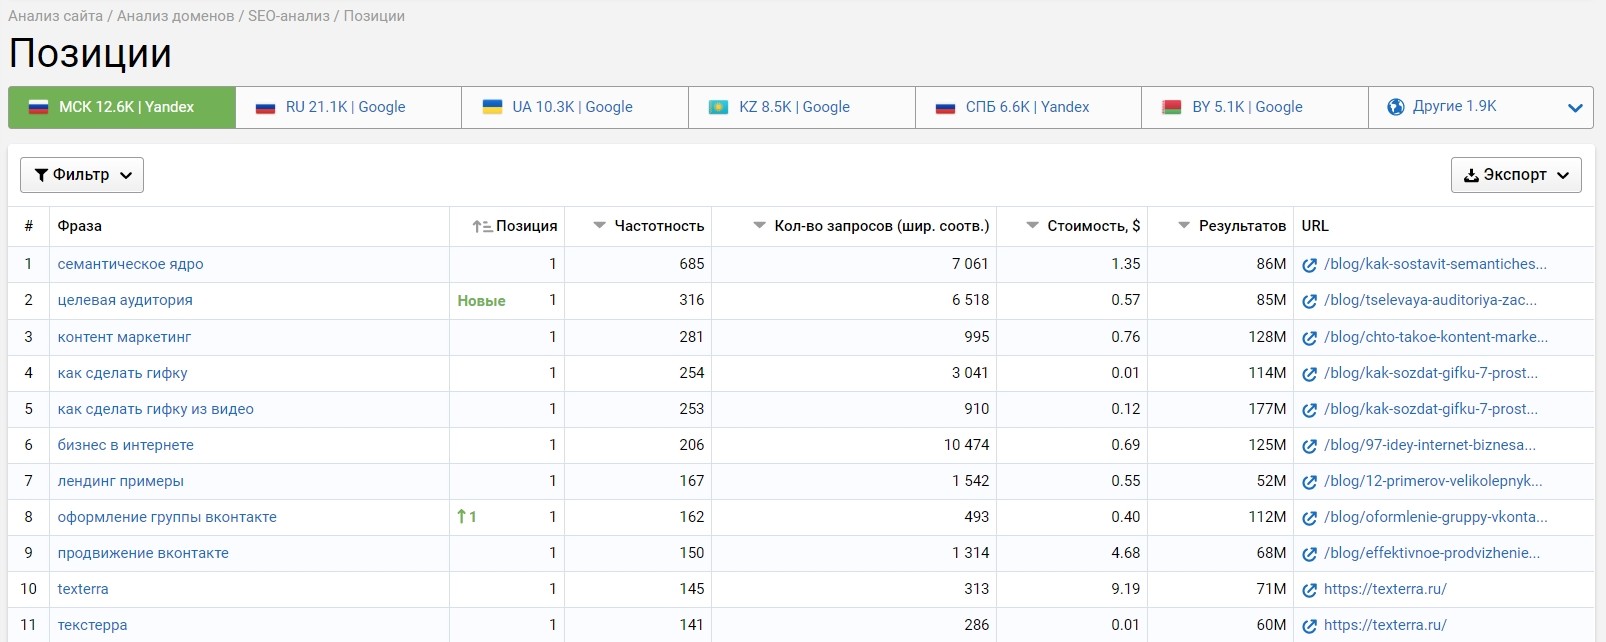 Запросы, по которым сайт имеет наилучшие позиции в Яндексе и Гугле